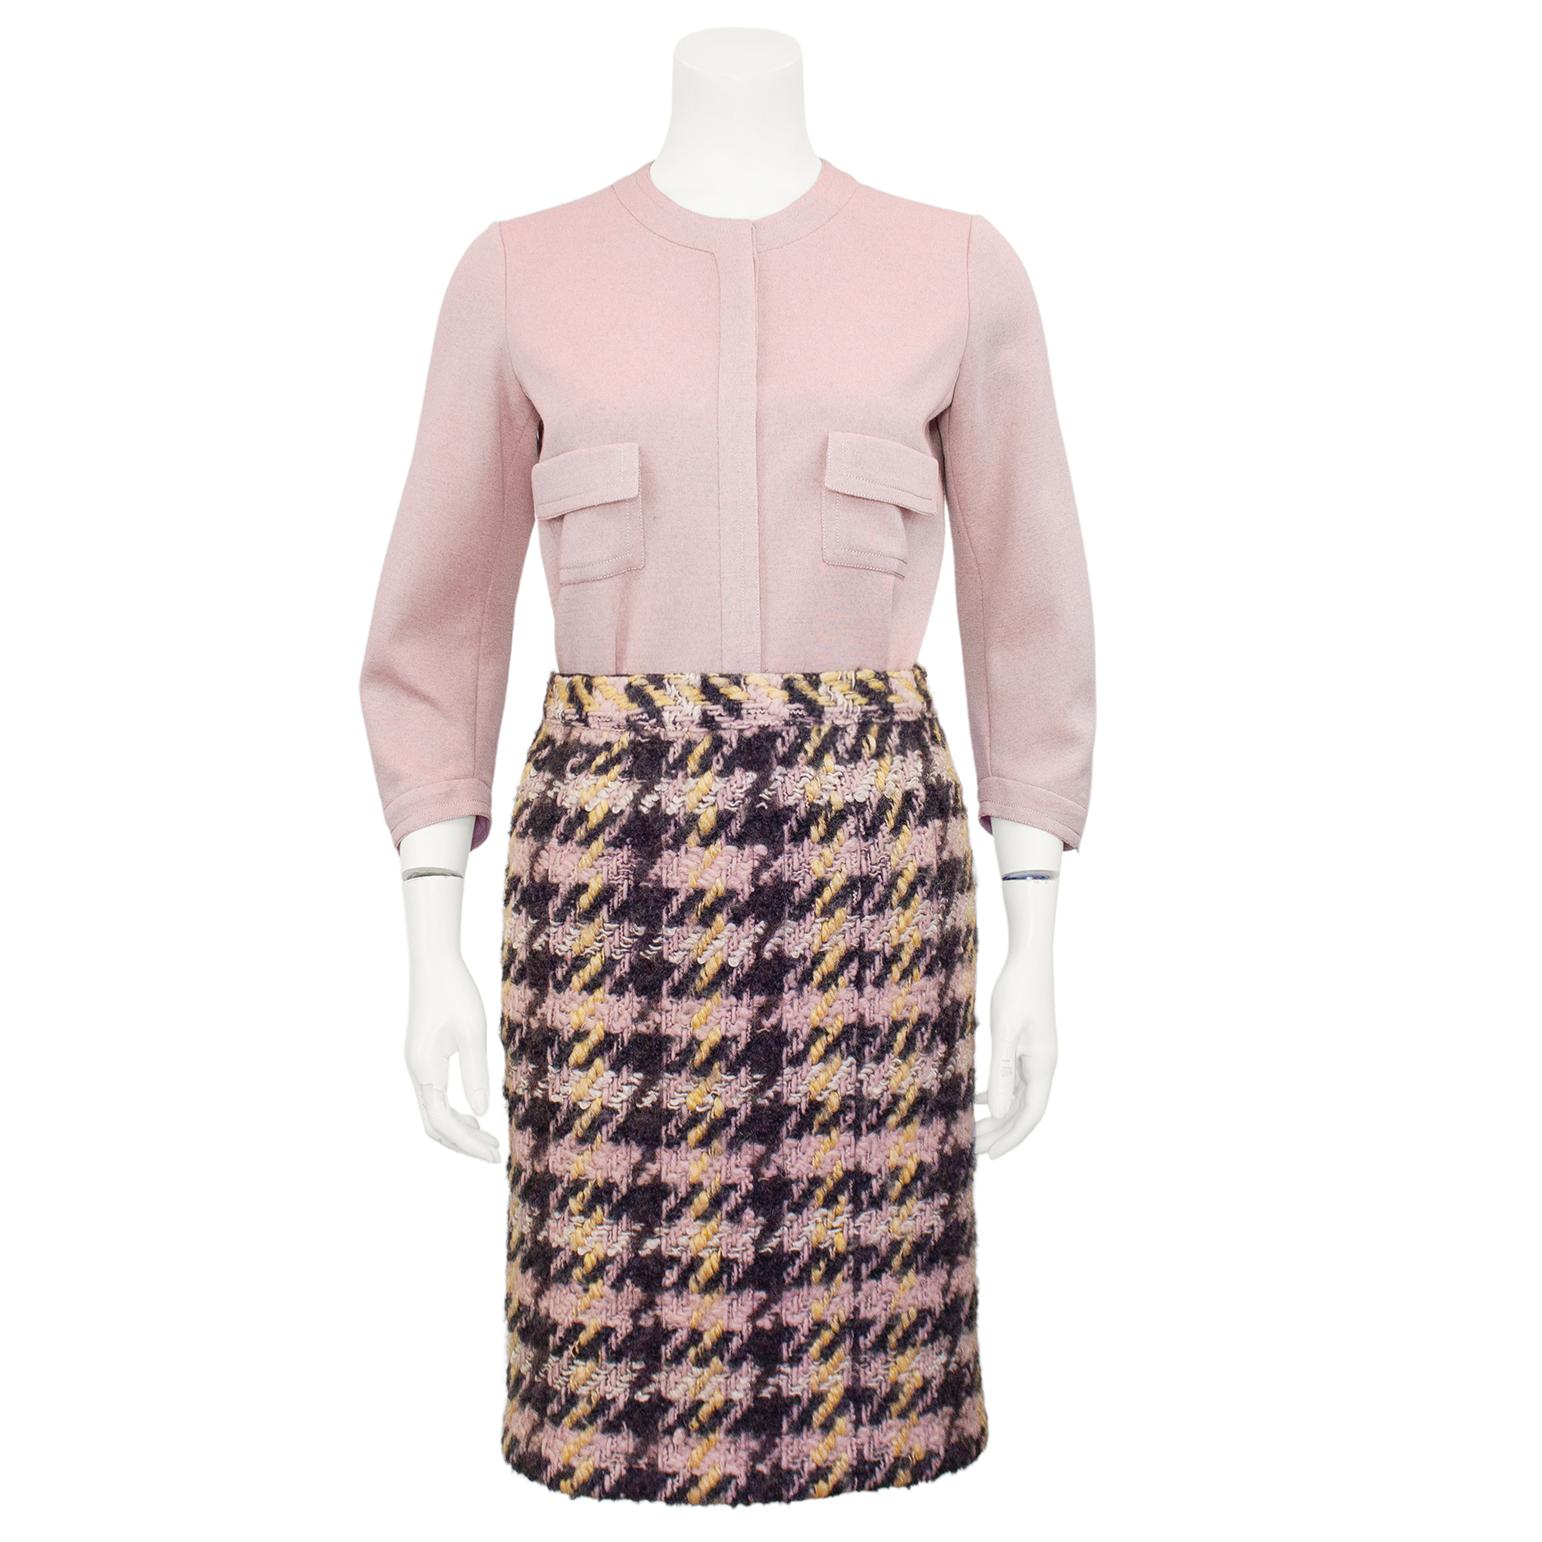 Très élégant ensemble Chanel Haute Couture en tweed pied-de-poule rose et gris anthracite des années 1960. La veste 7/8 est ornée de boutons roses et noirs, de détails centraux en métal doré en forme de tête de lion et de manches en forme de